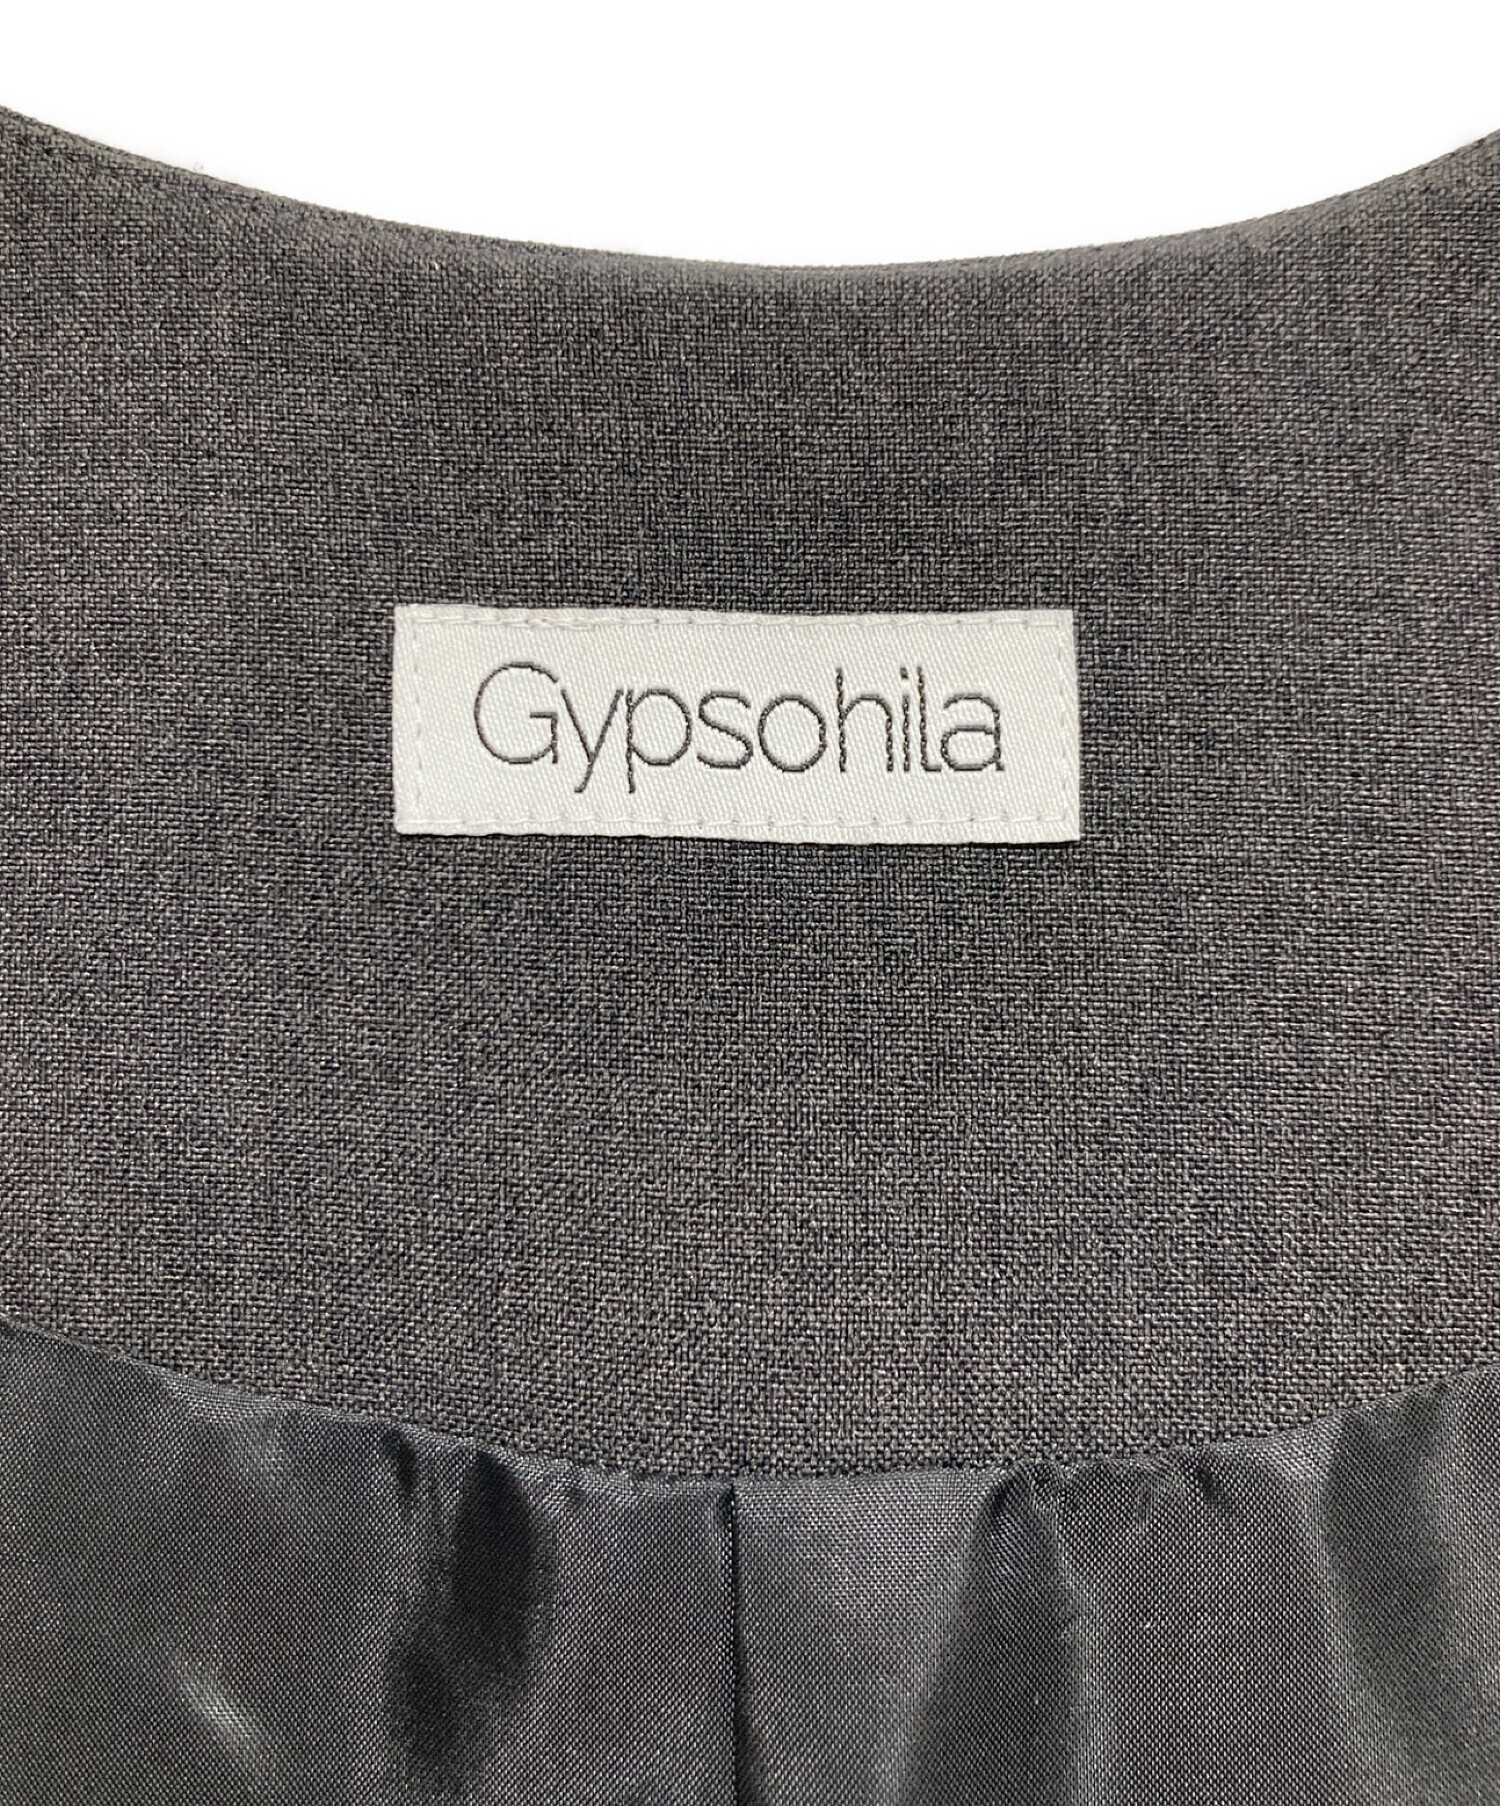 Gypsohila (ジプソフィア) ショートジレ グレー サイズ:FREE